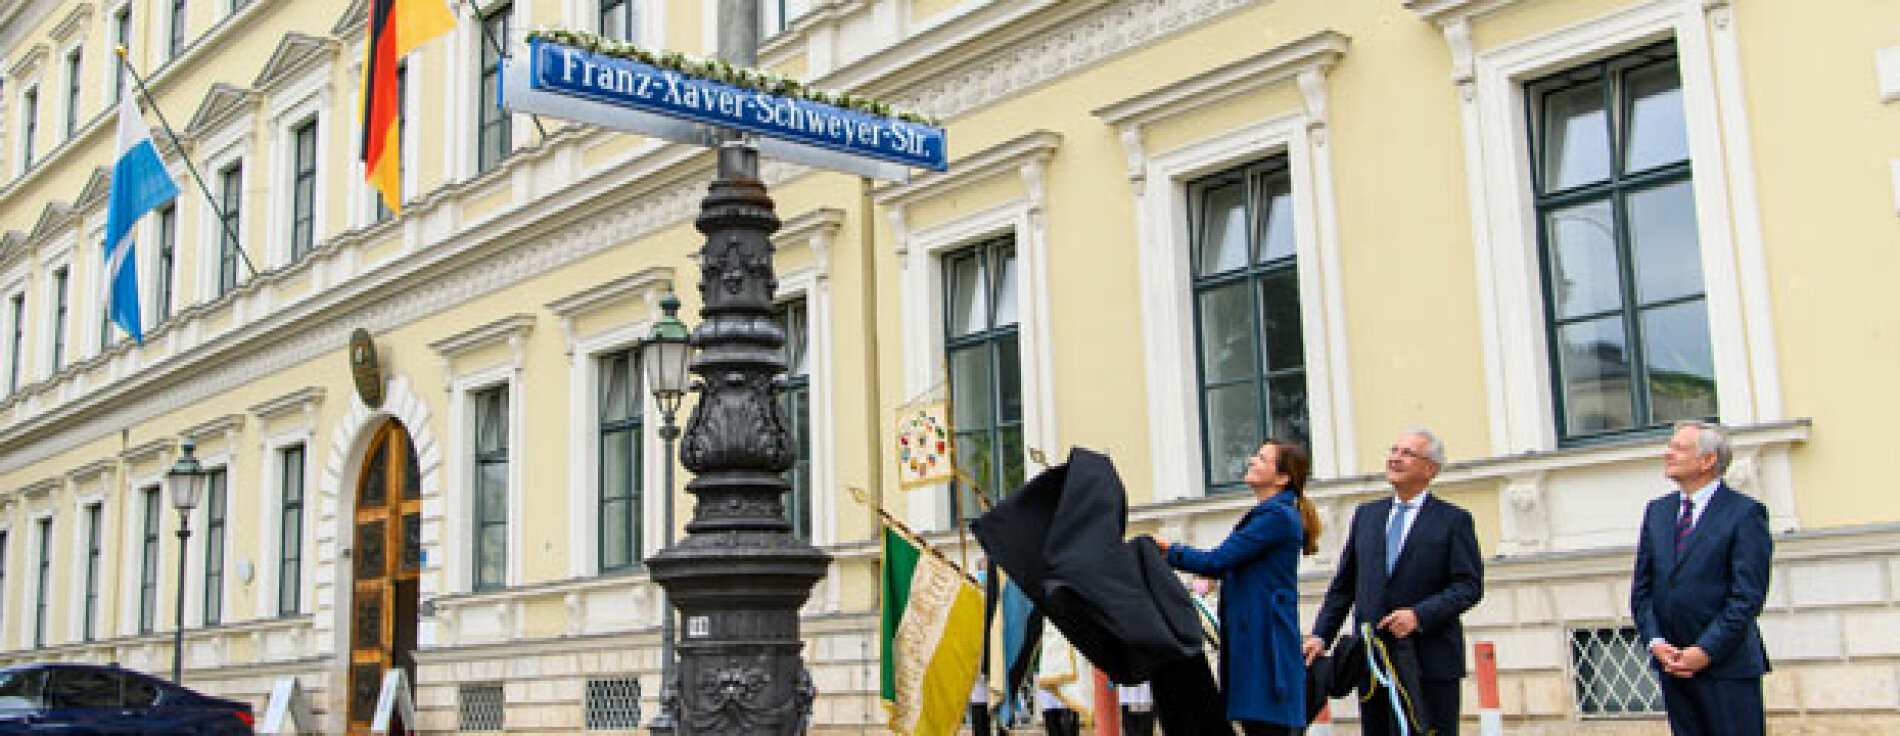 Enthüllung des Straßenschildes Franz Xaver Schweyer Straße